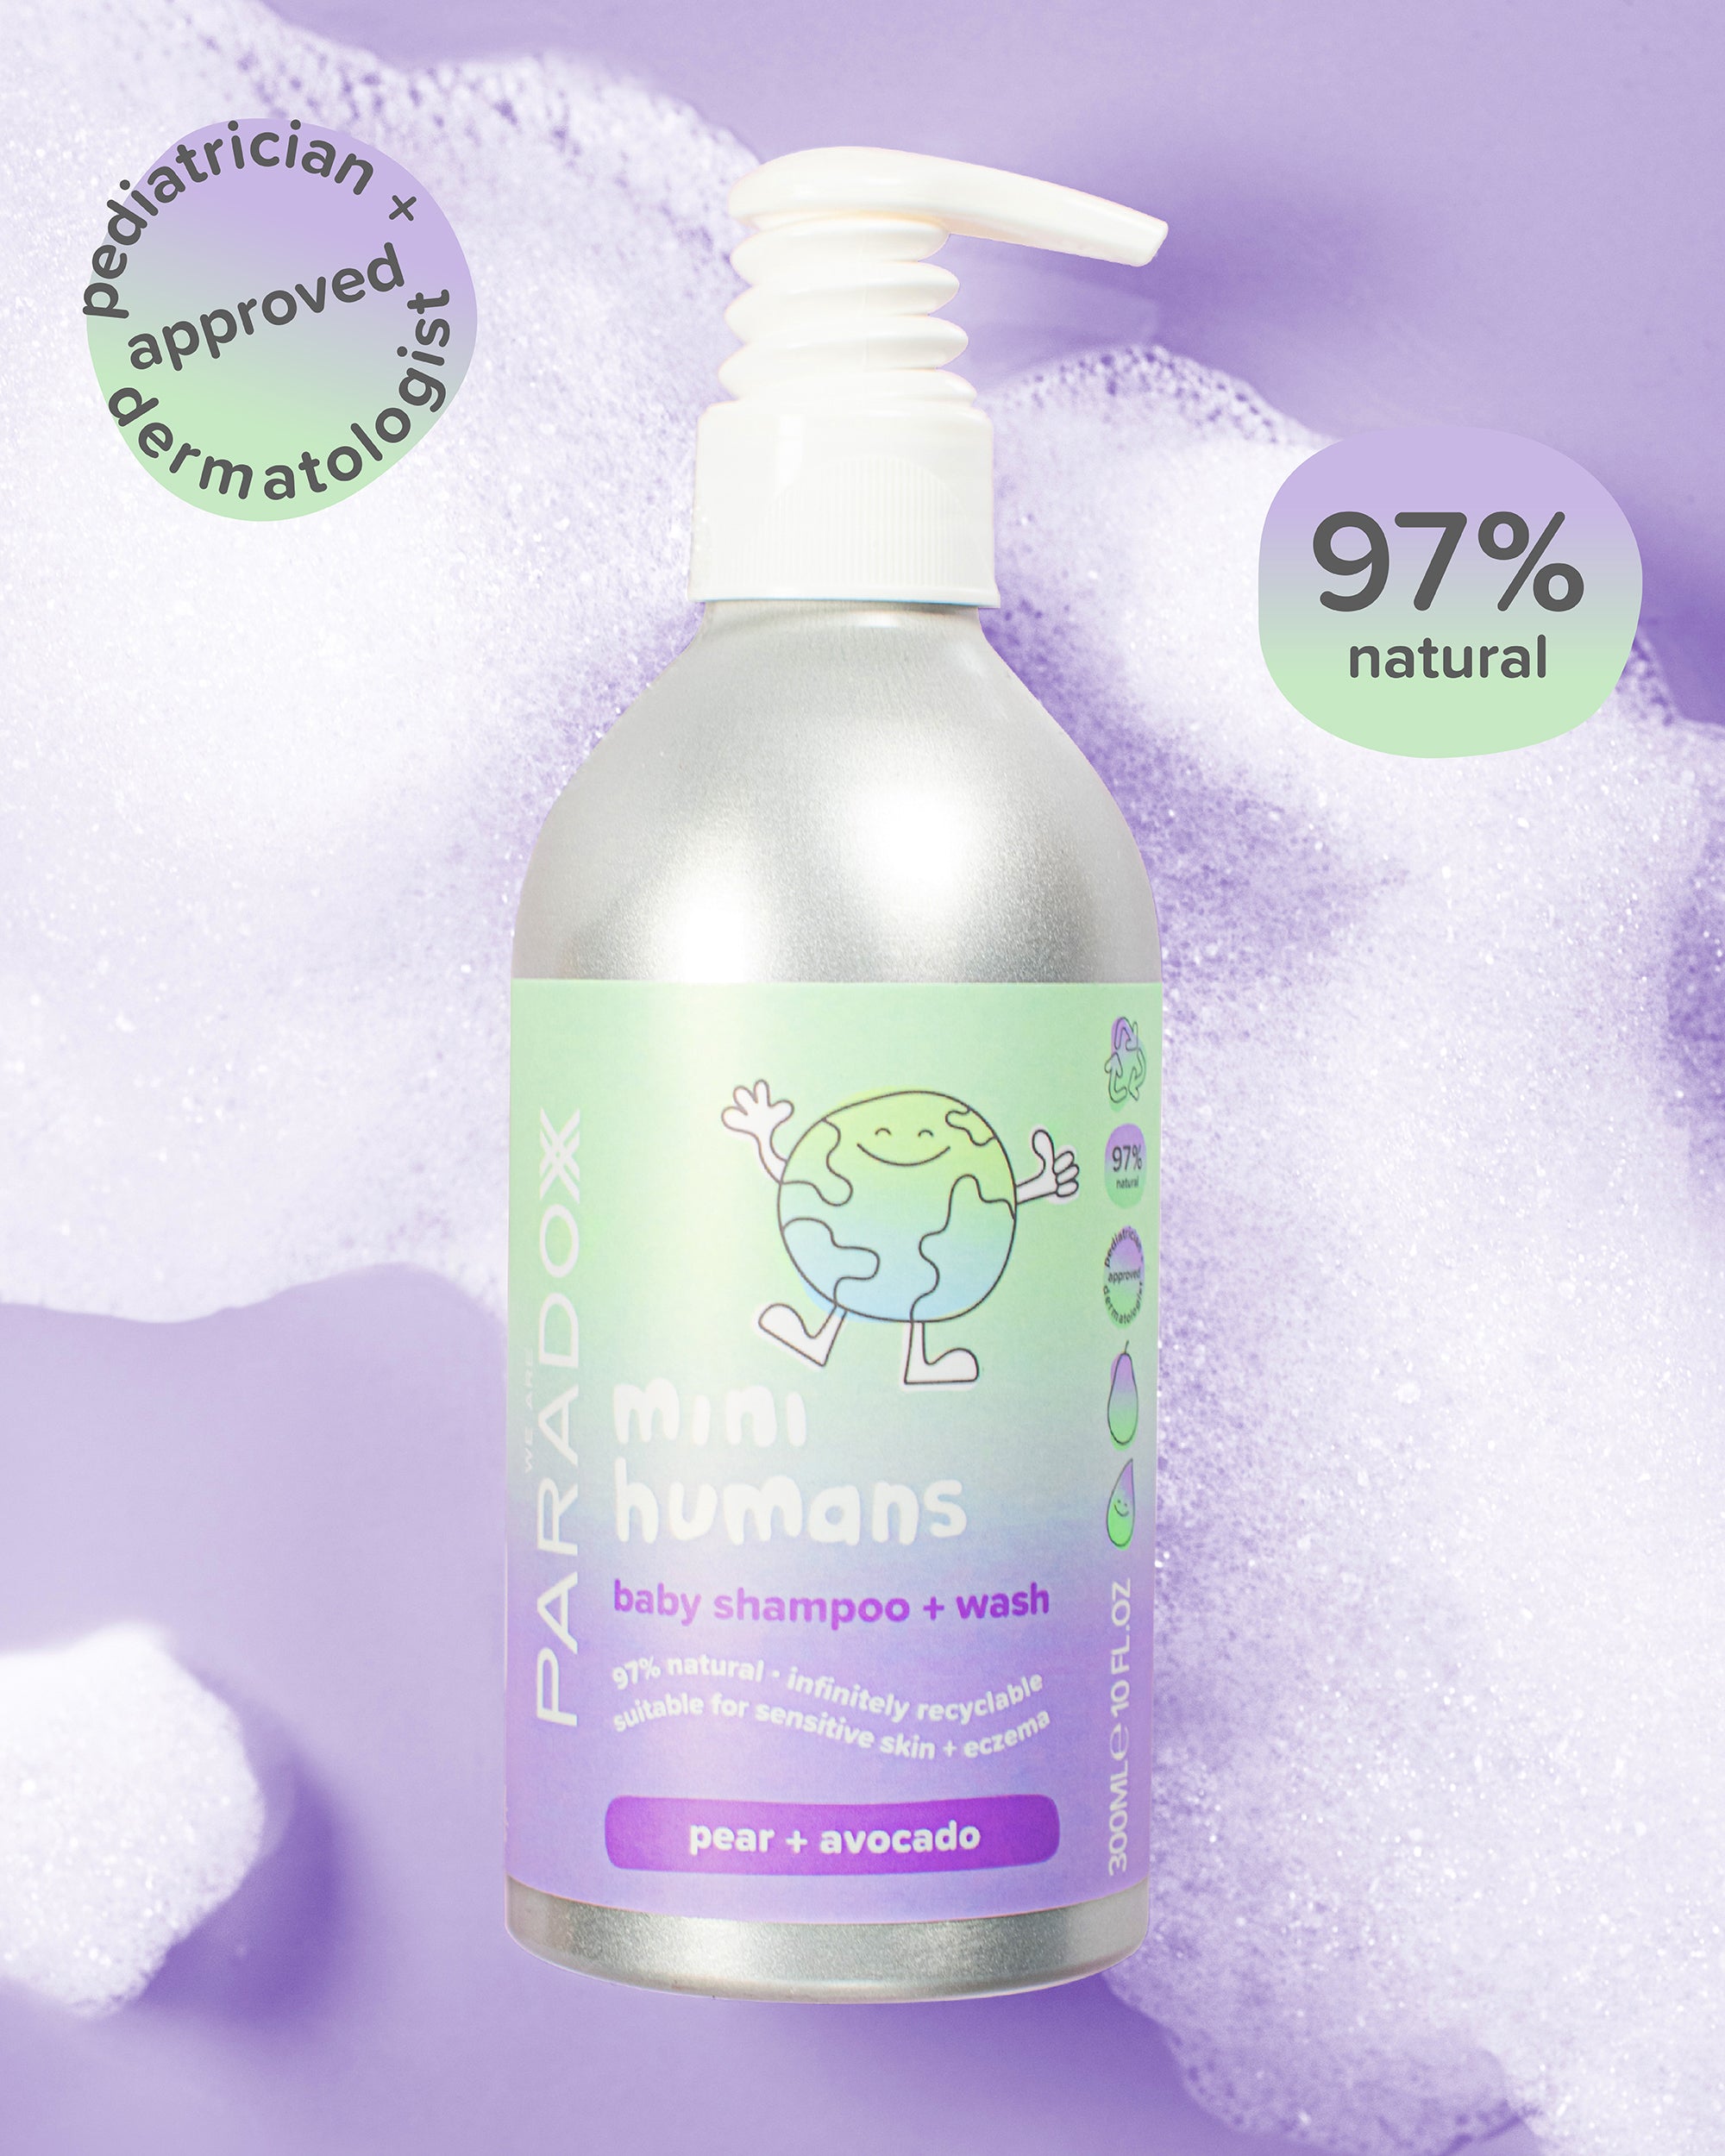 Mini Humans Shampoo + Wash 300ml